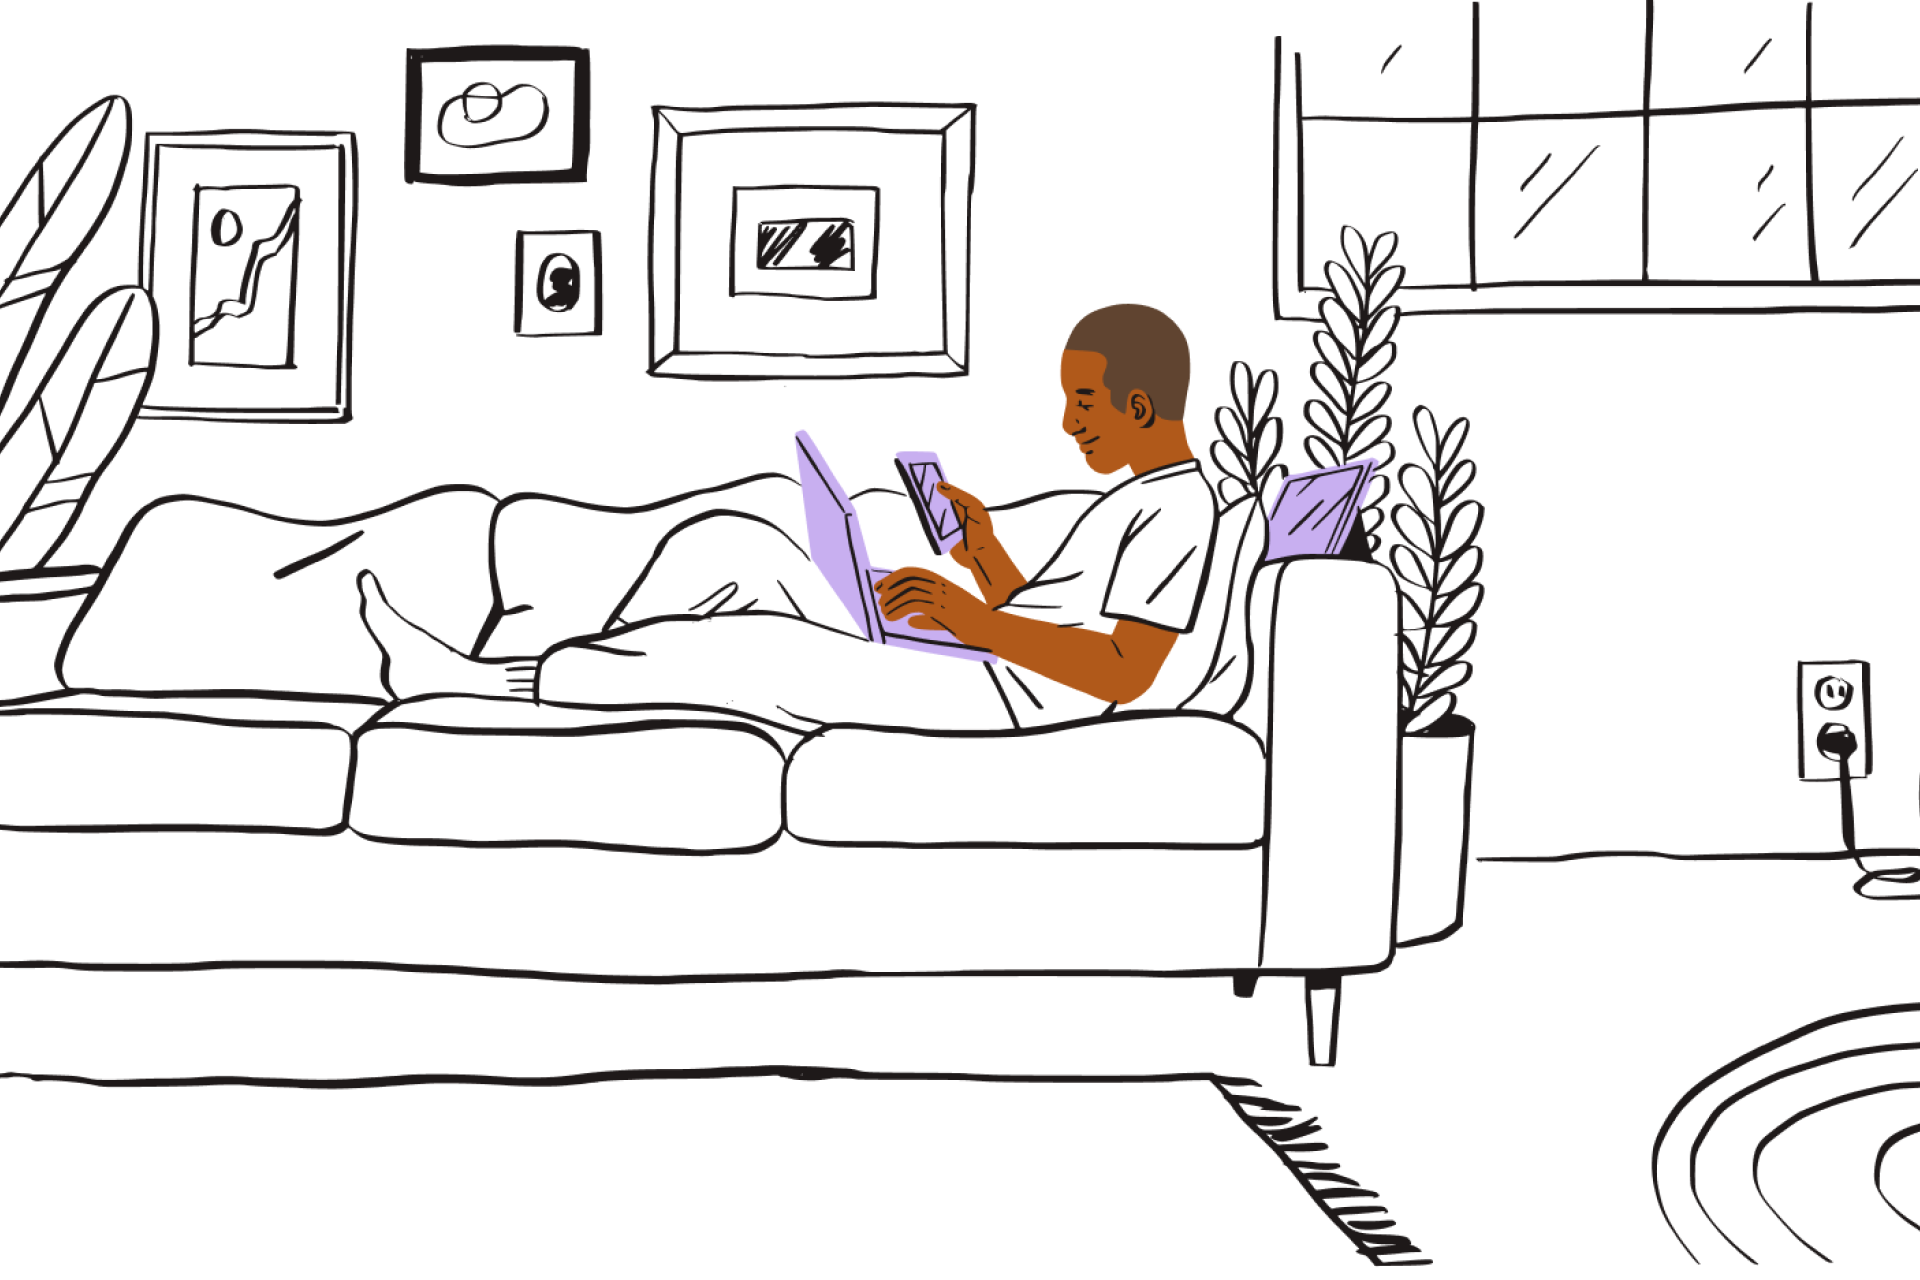 En person som sitter tillbakalutad i en soffa och tittar på en PDF på sin bärbara dator och mobila enhet.